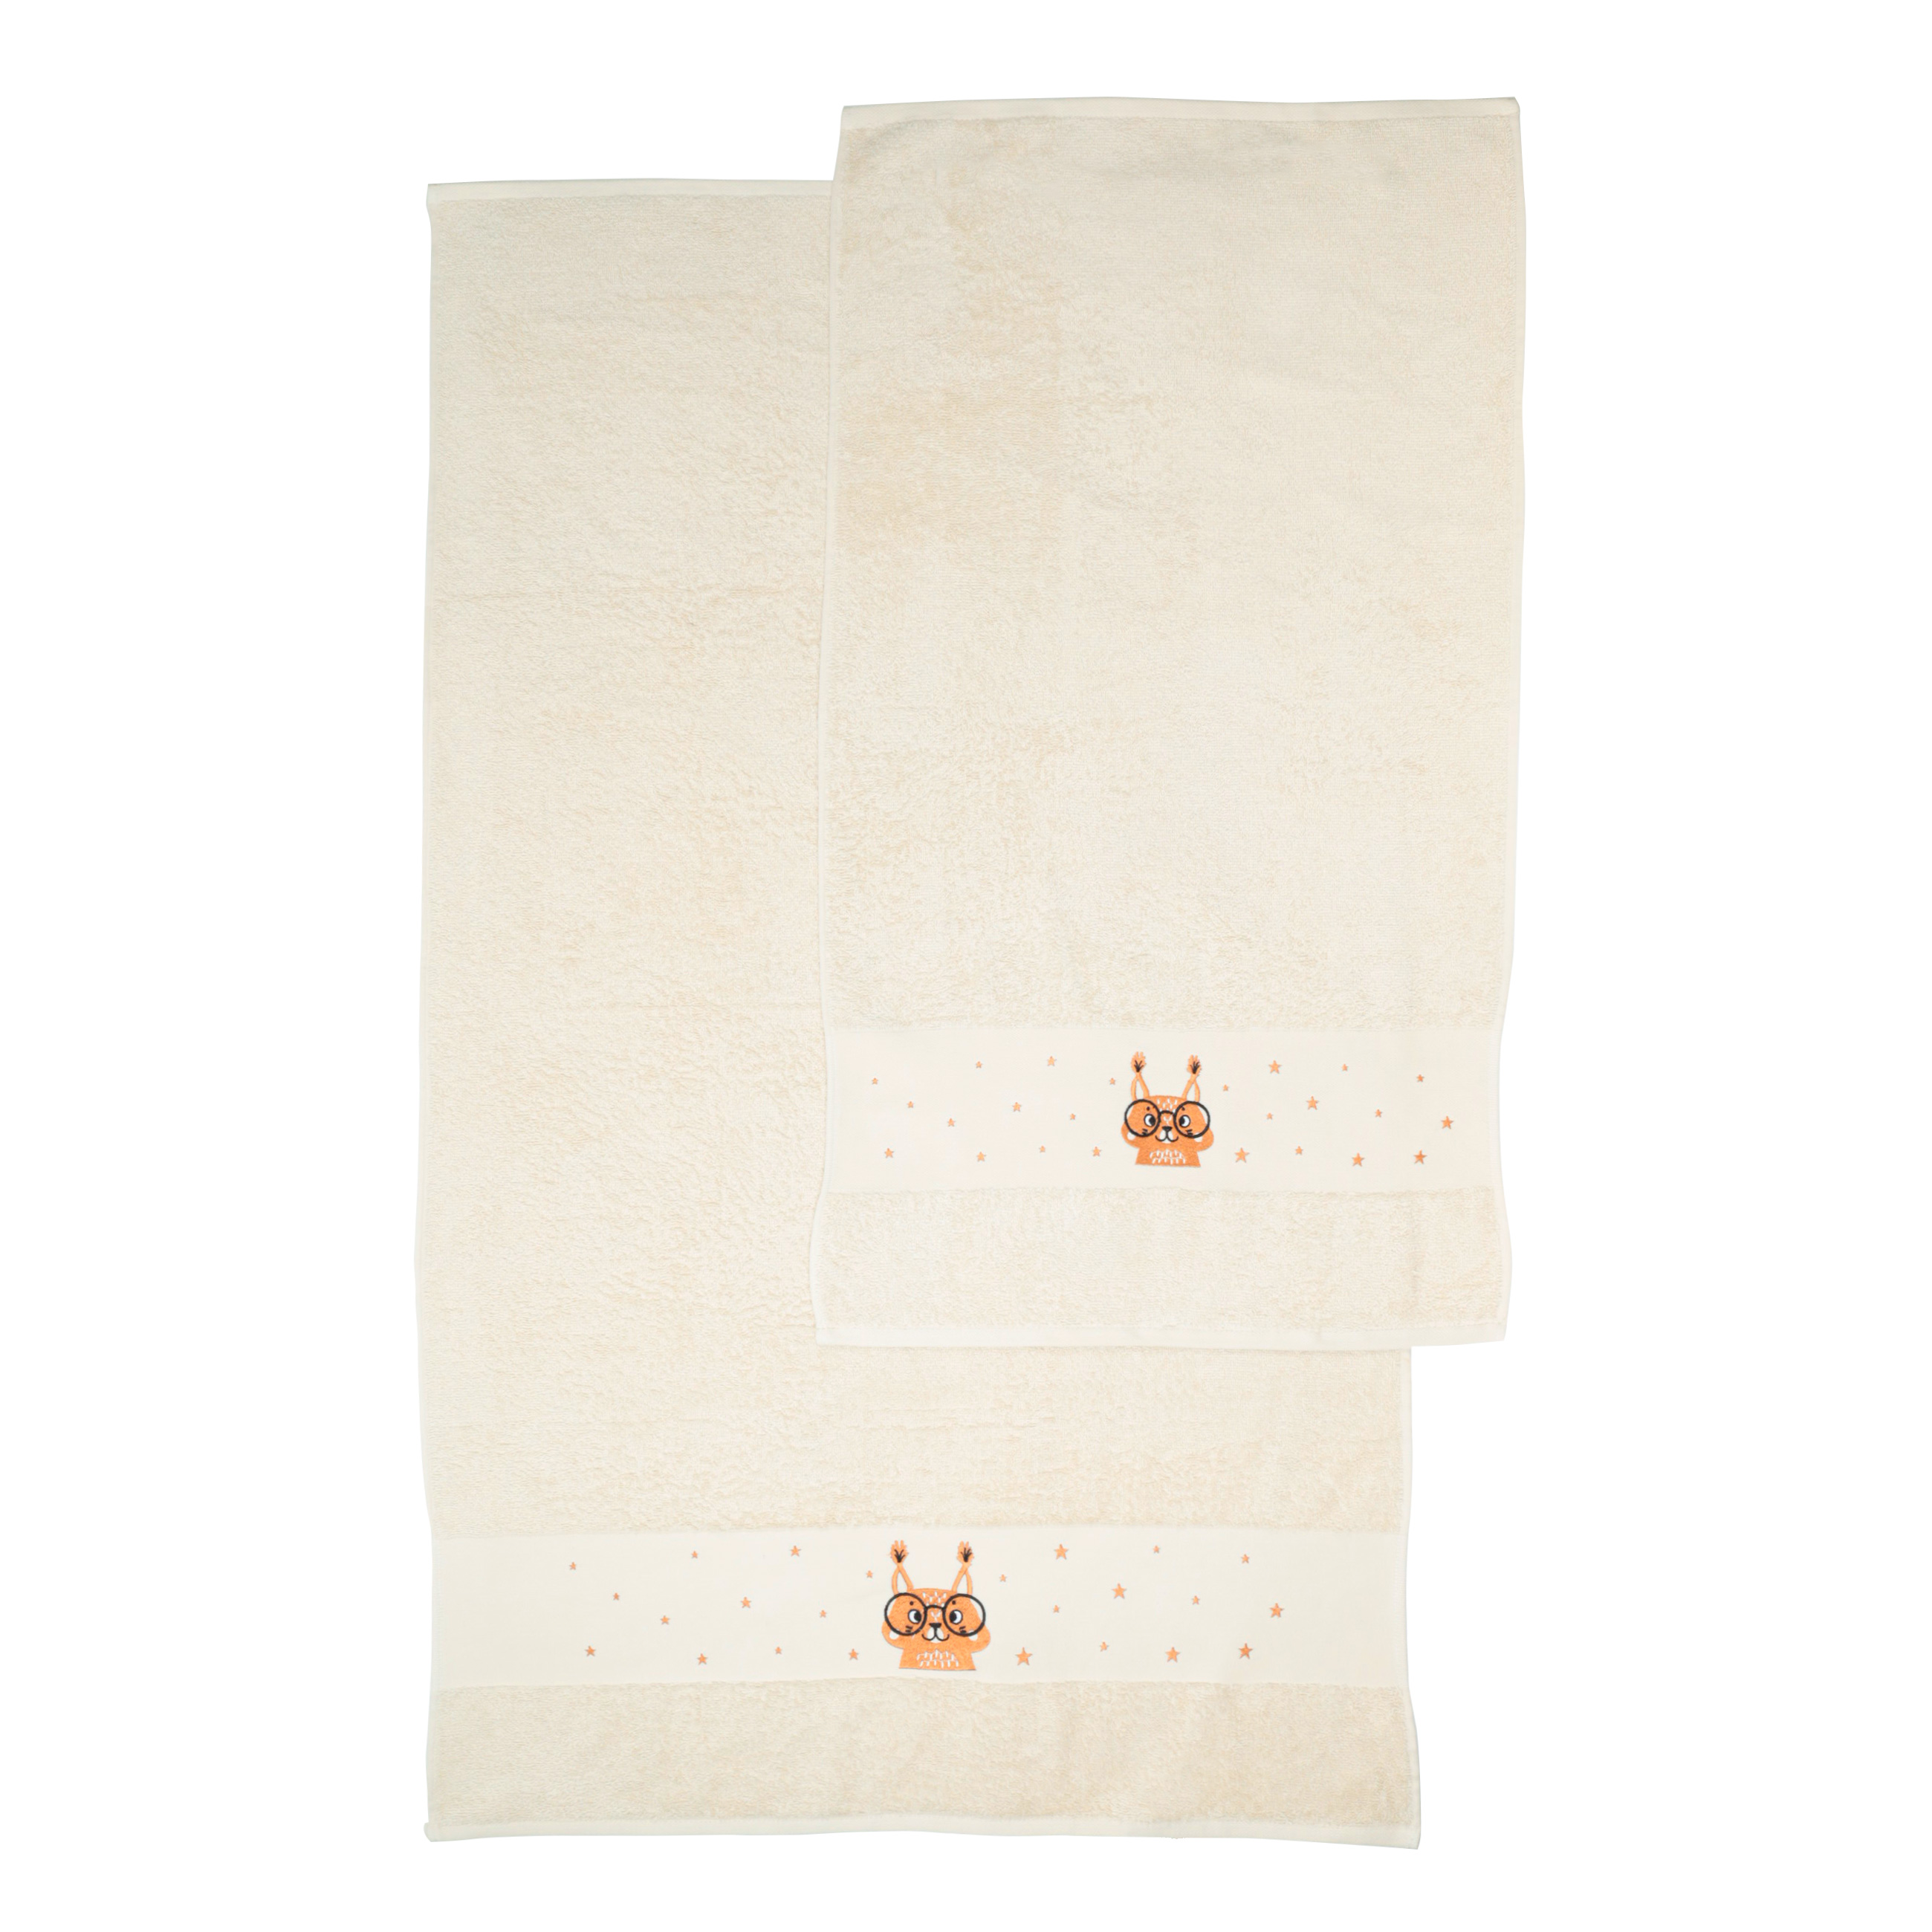 Children's towel, 50x90 cm, cotton, beige, Squirrel, Forest Animals изображение № 3